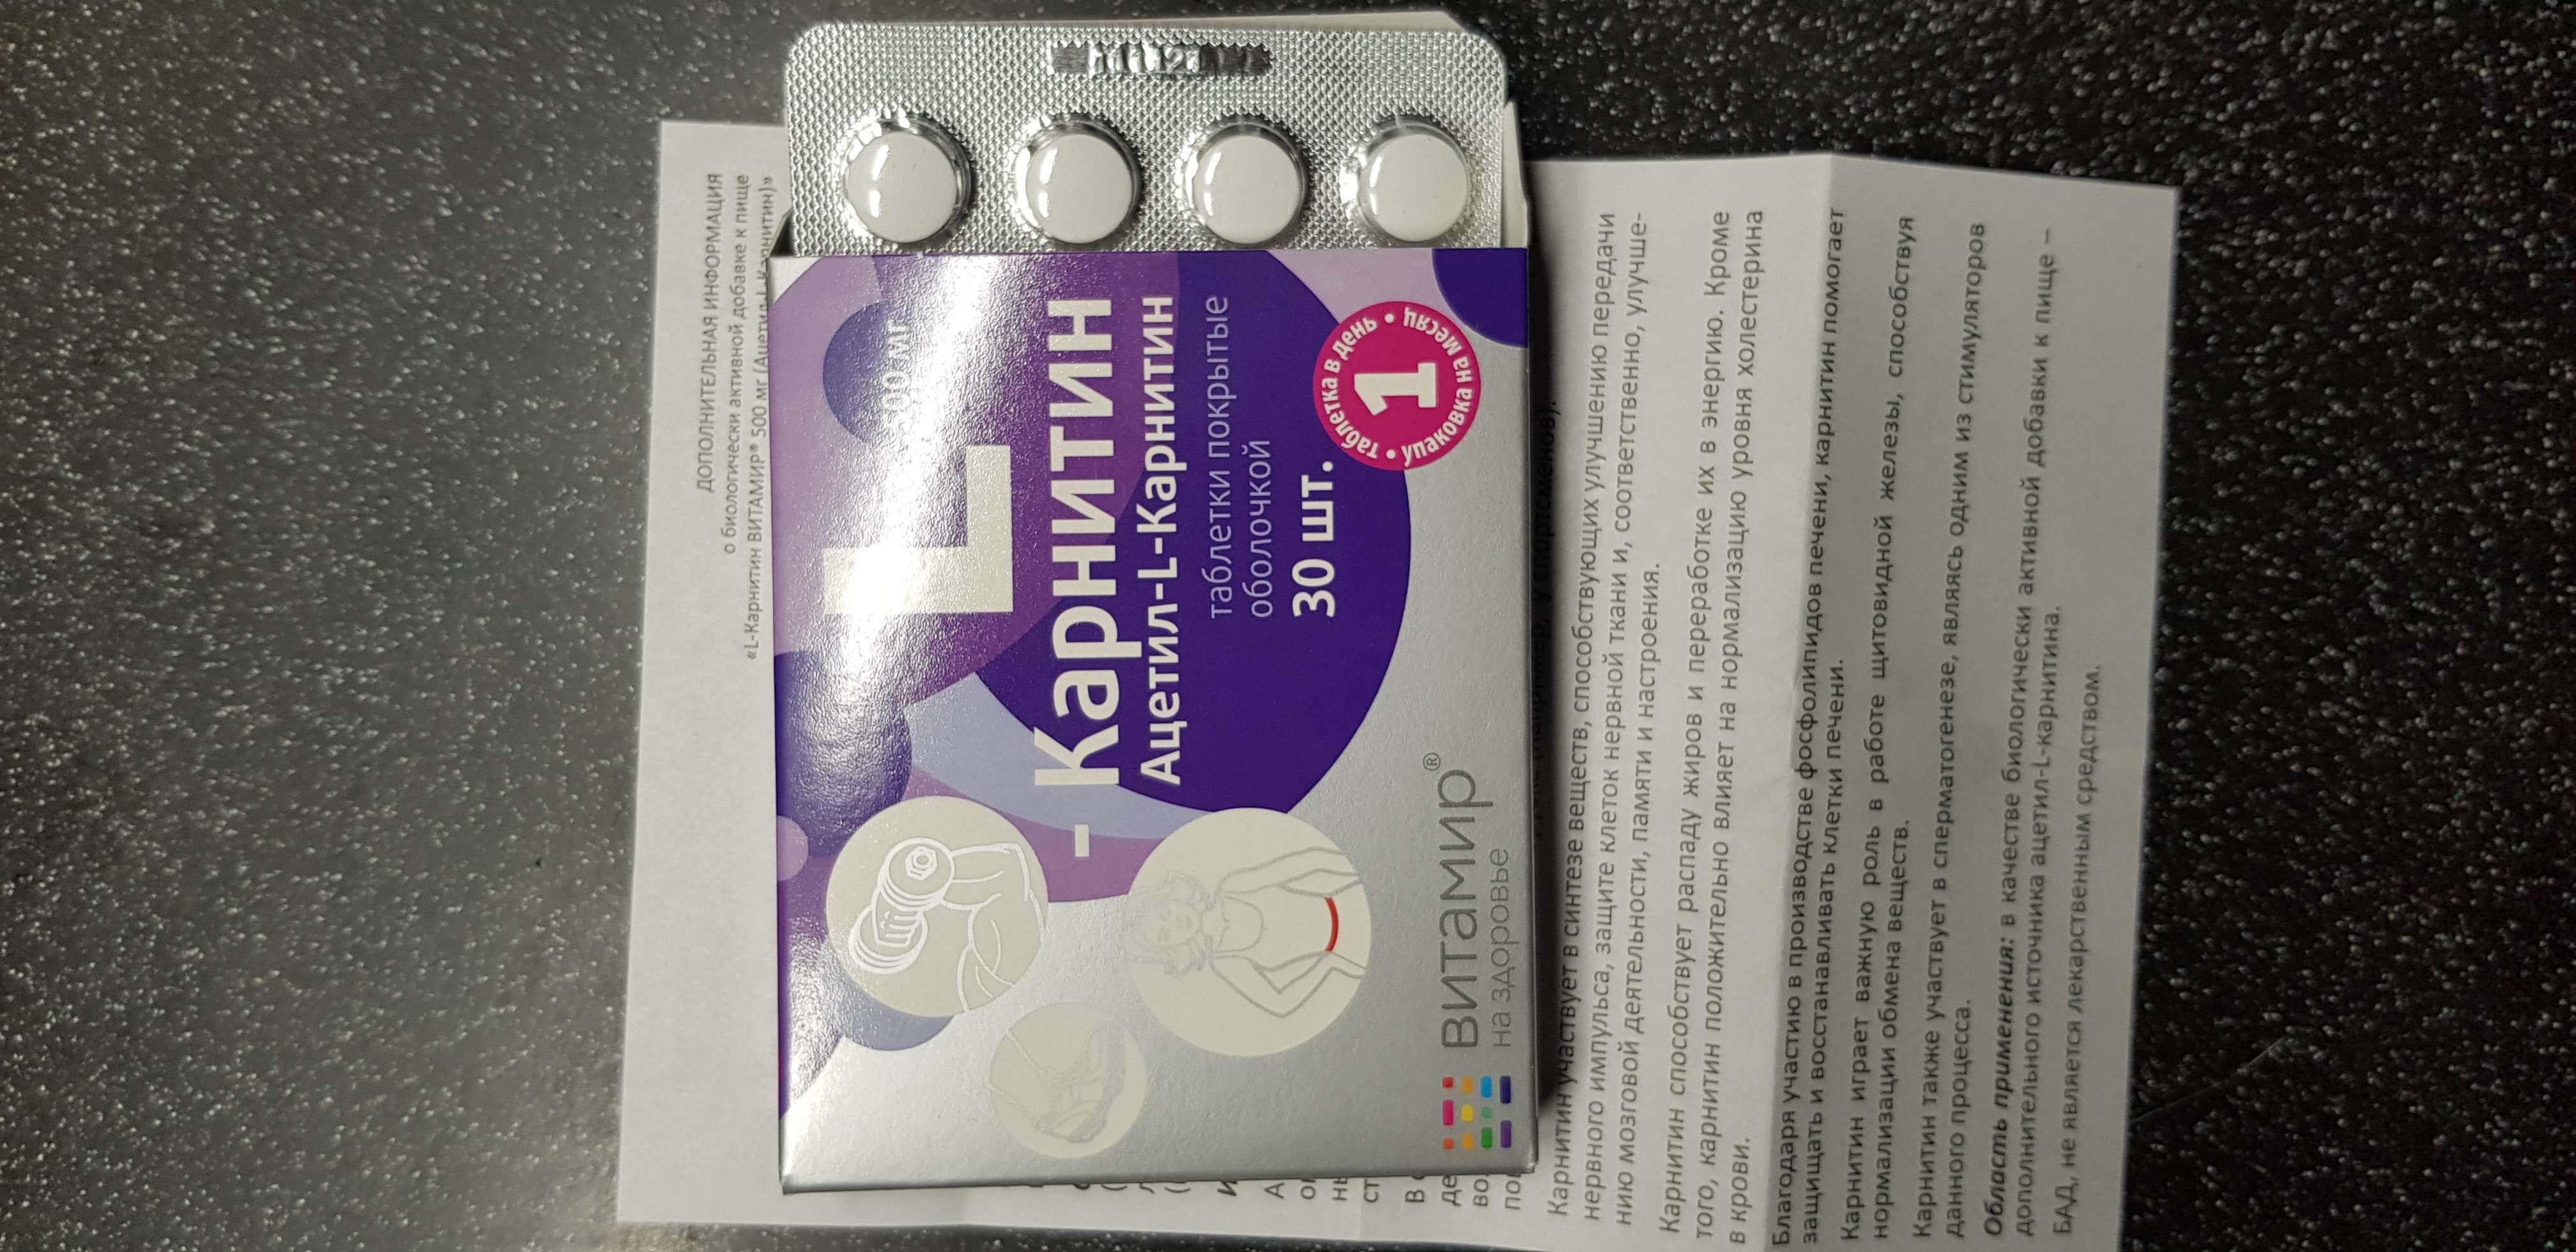 Фотография покупателя товара БАД L-Карнитин Витамир, жиросжигание, 500 мг, 30 таблеток